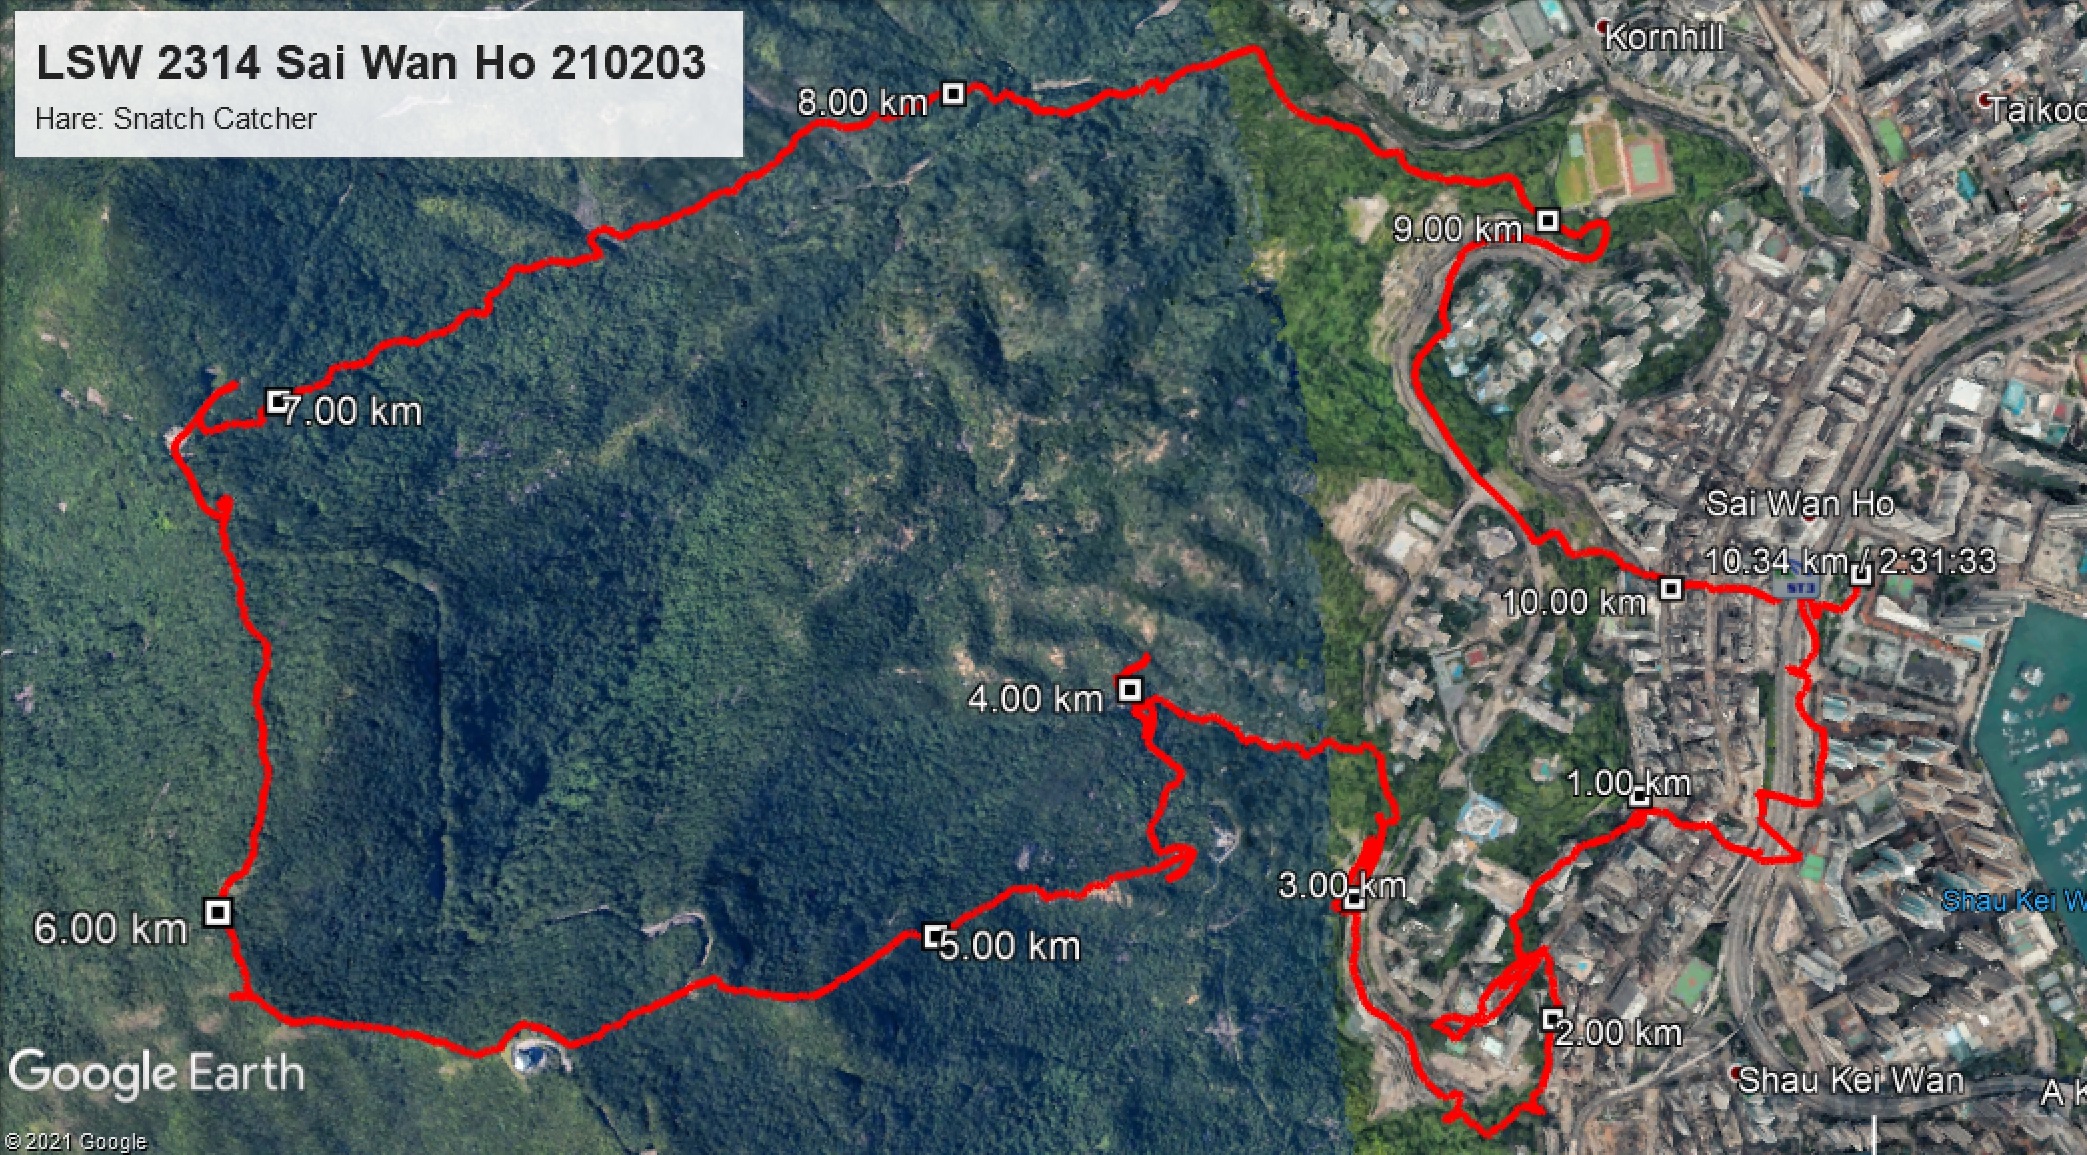 Sai Wan Ho 210203 10.34km 151mins